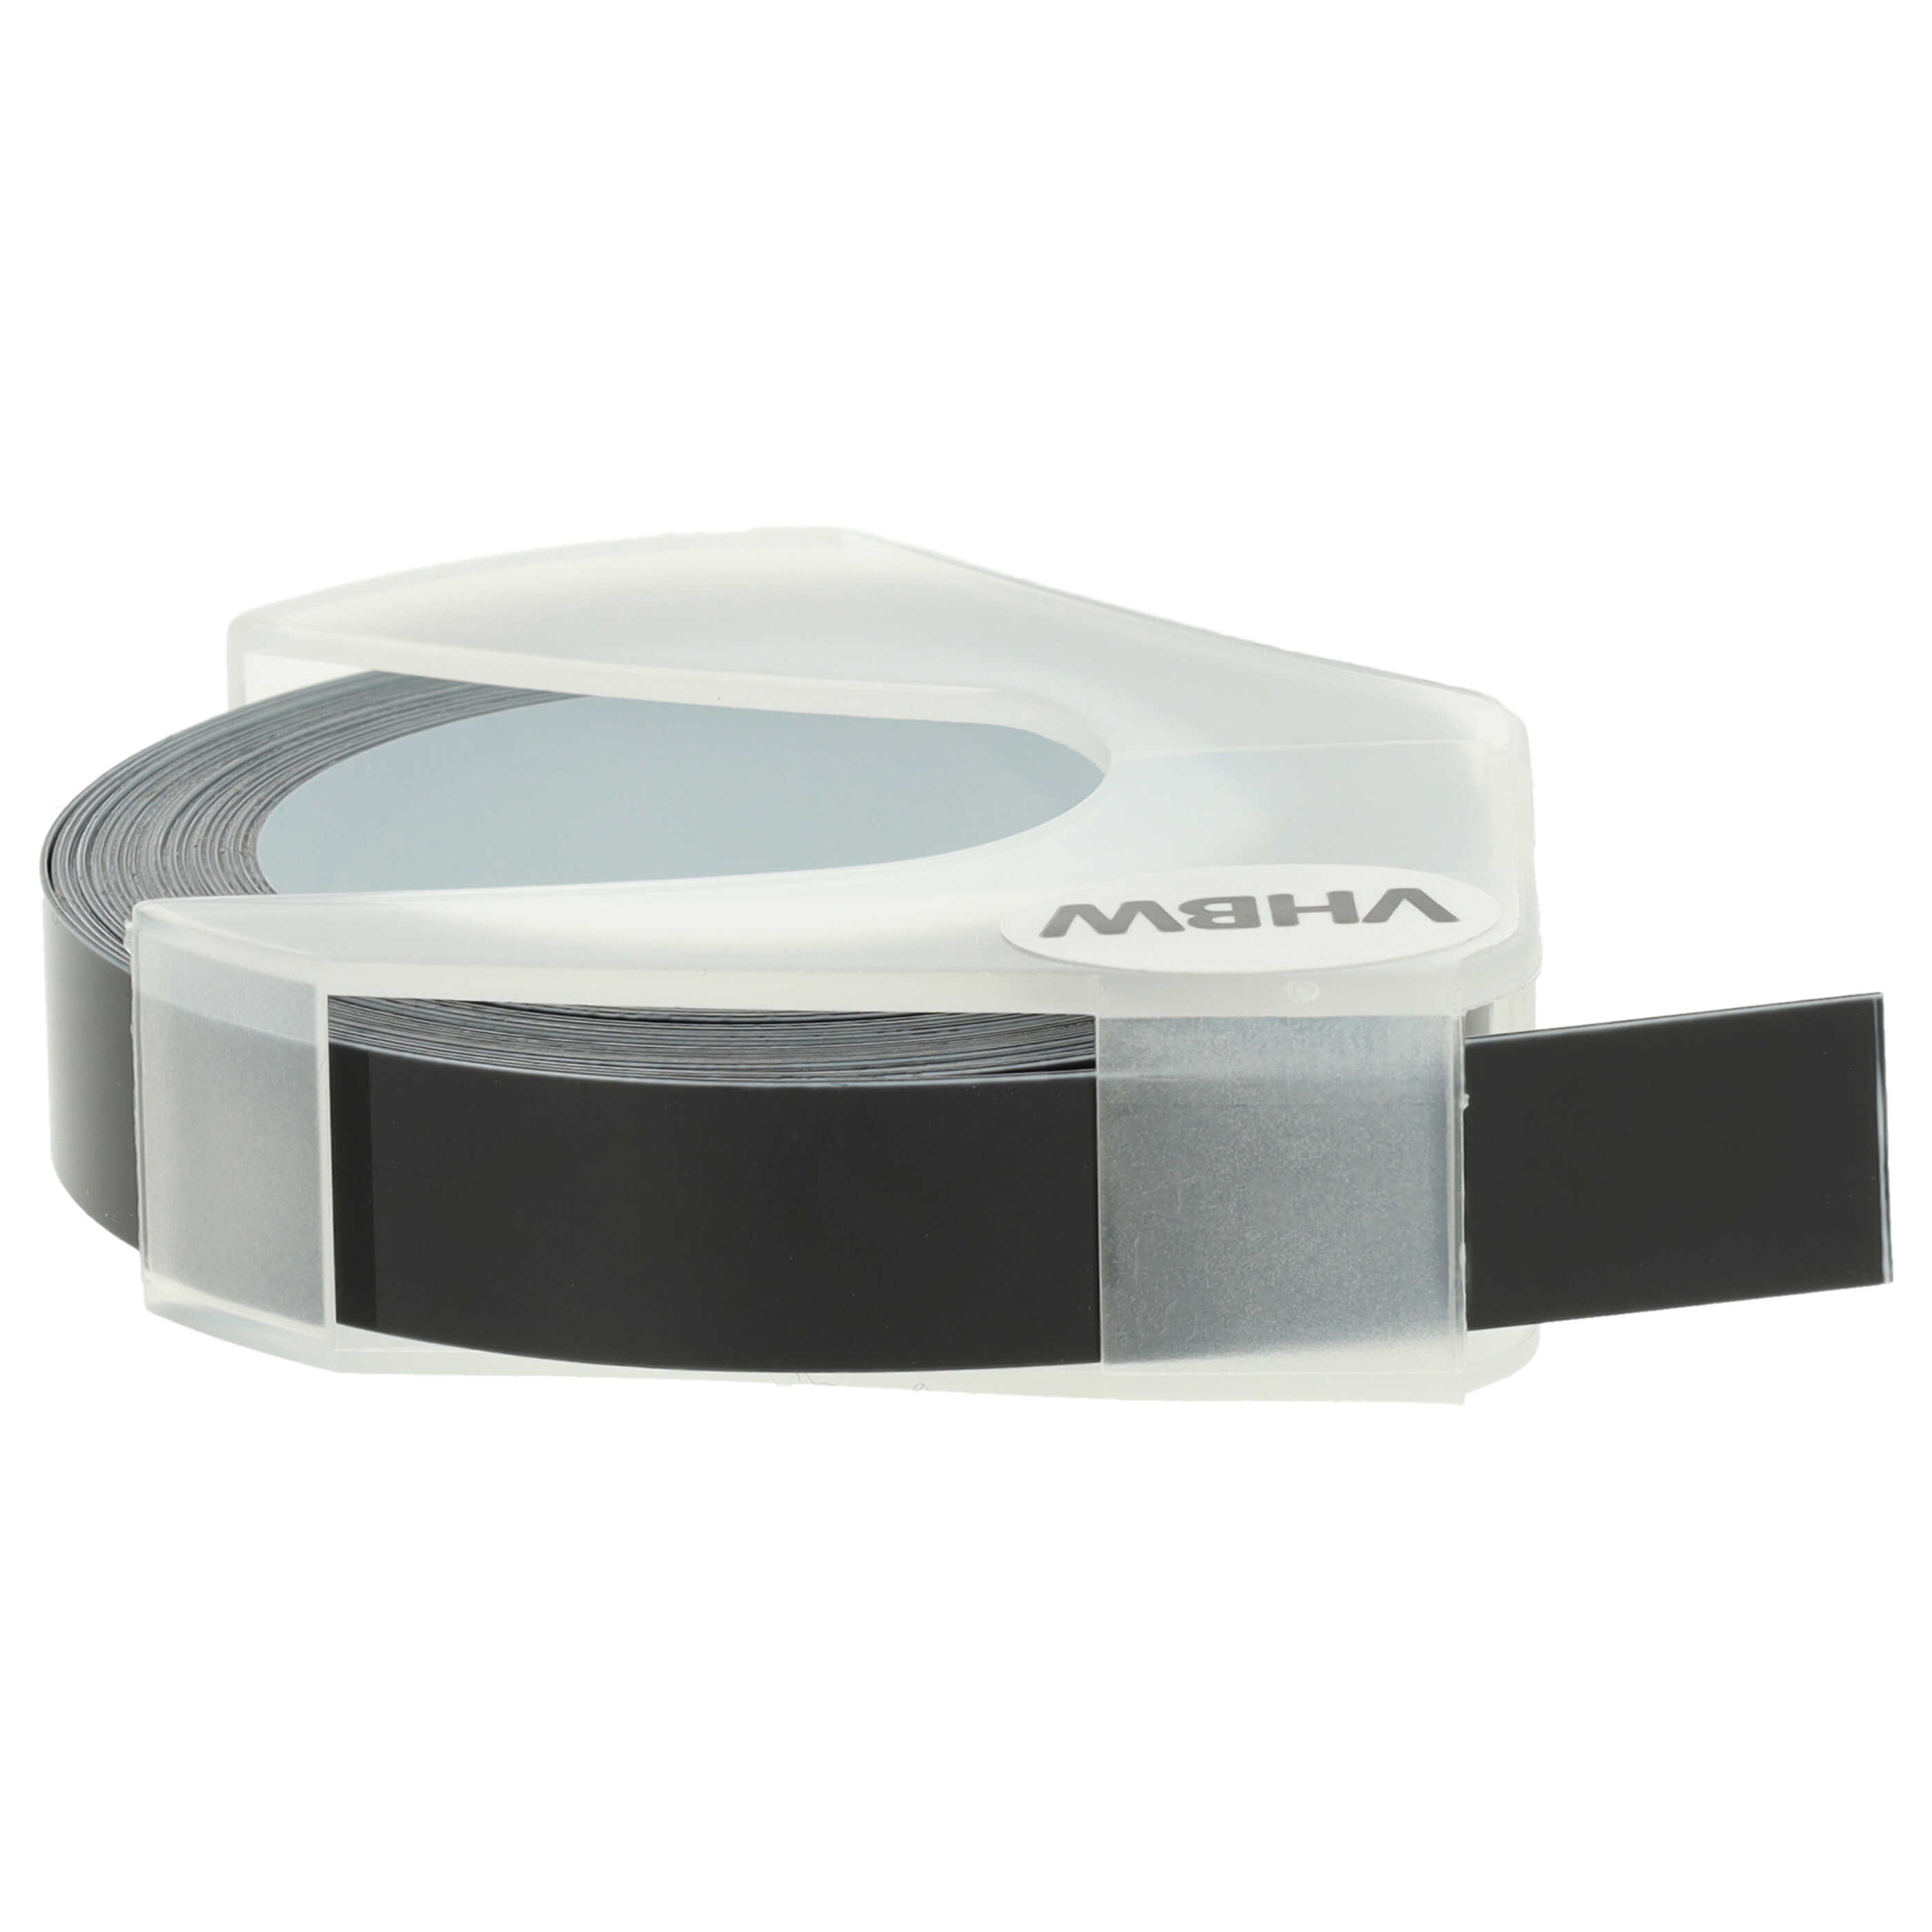 Casete cinta relieve 3D Casete cinta escritura reemplaza Dymo 520109, 0898130, S0898130 Blanco su Negro